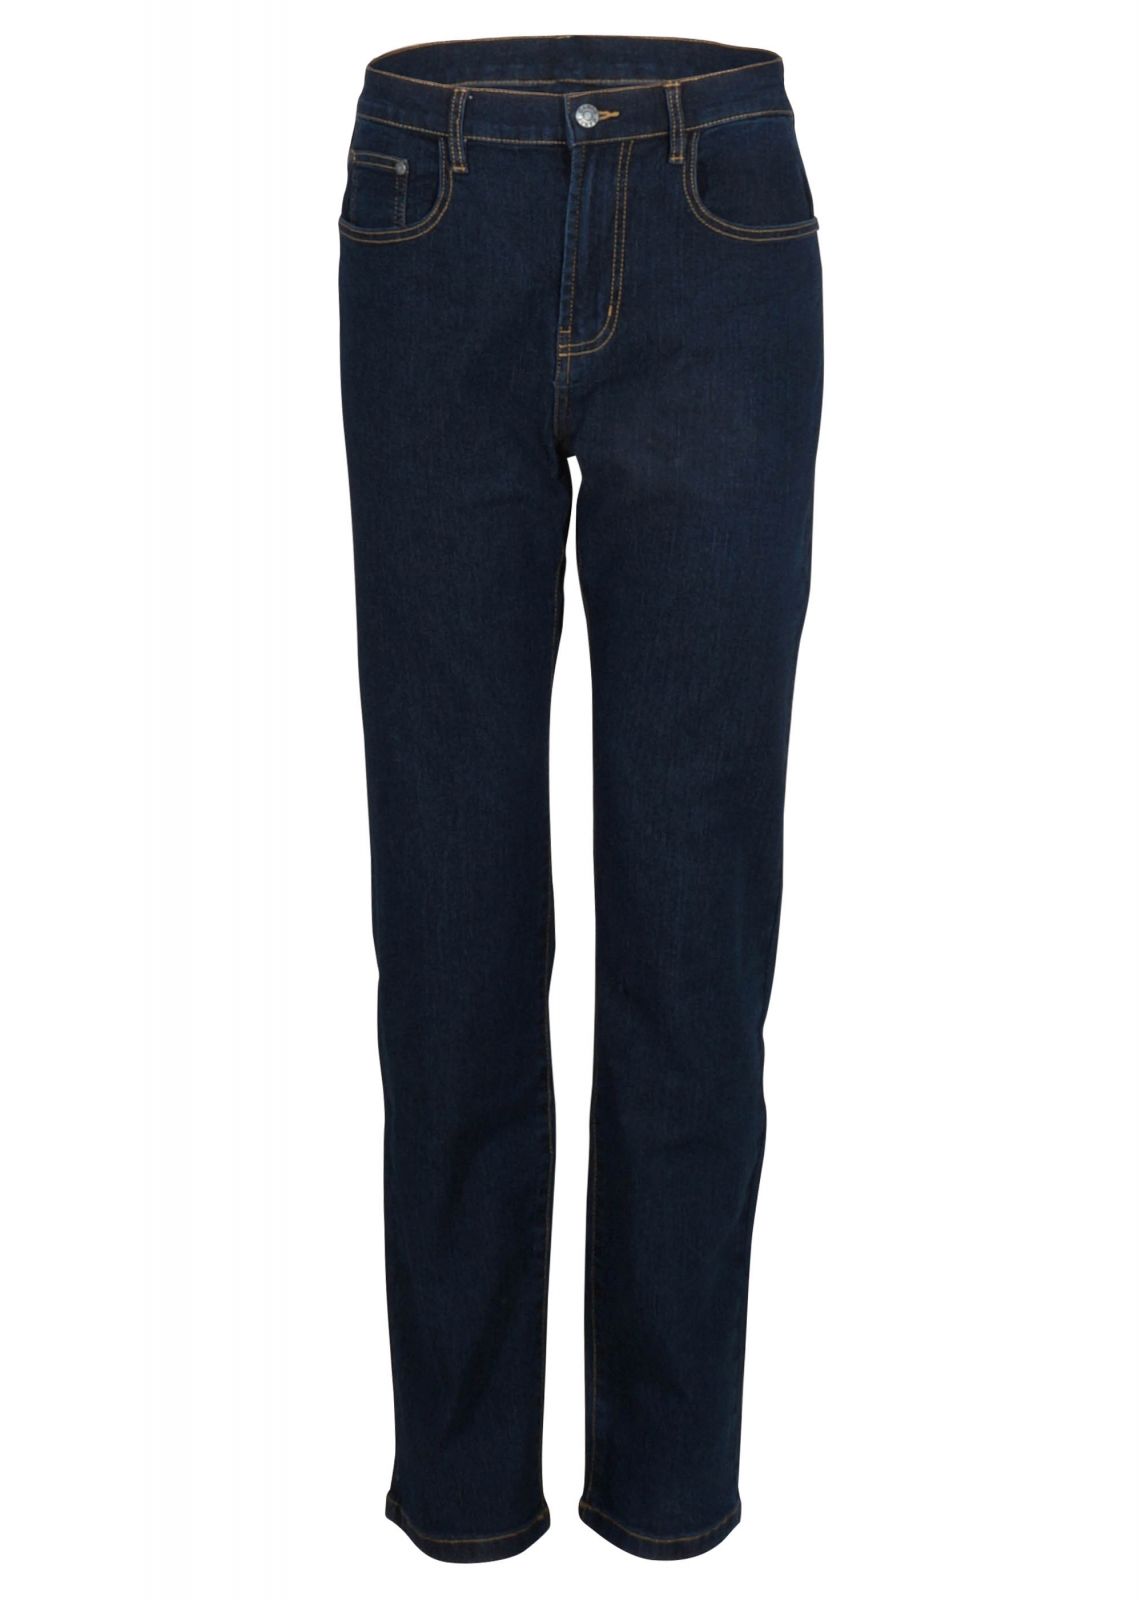 Αντρικό παντελόνι jean ελαστικό 5άτσεπο σε ίσια κλασική γραμμή. Basic collection.